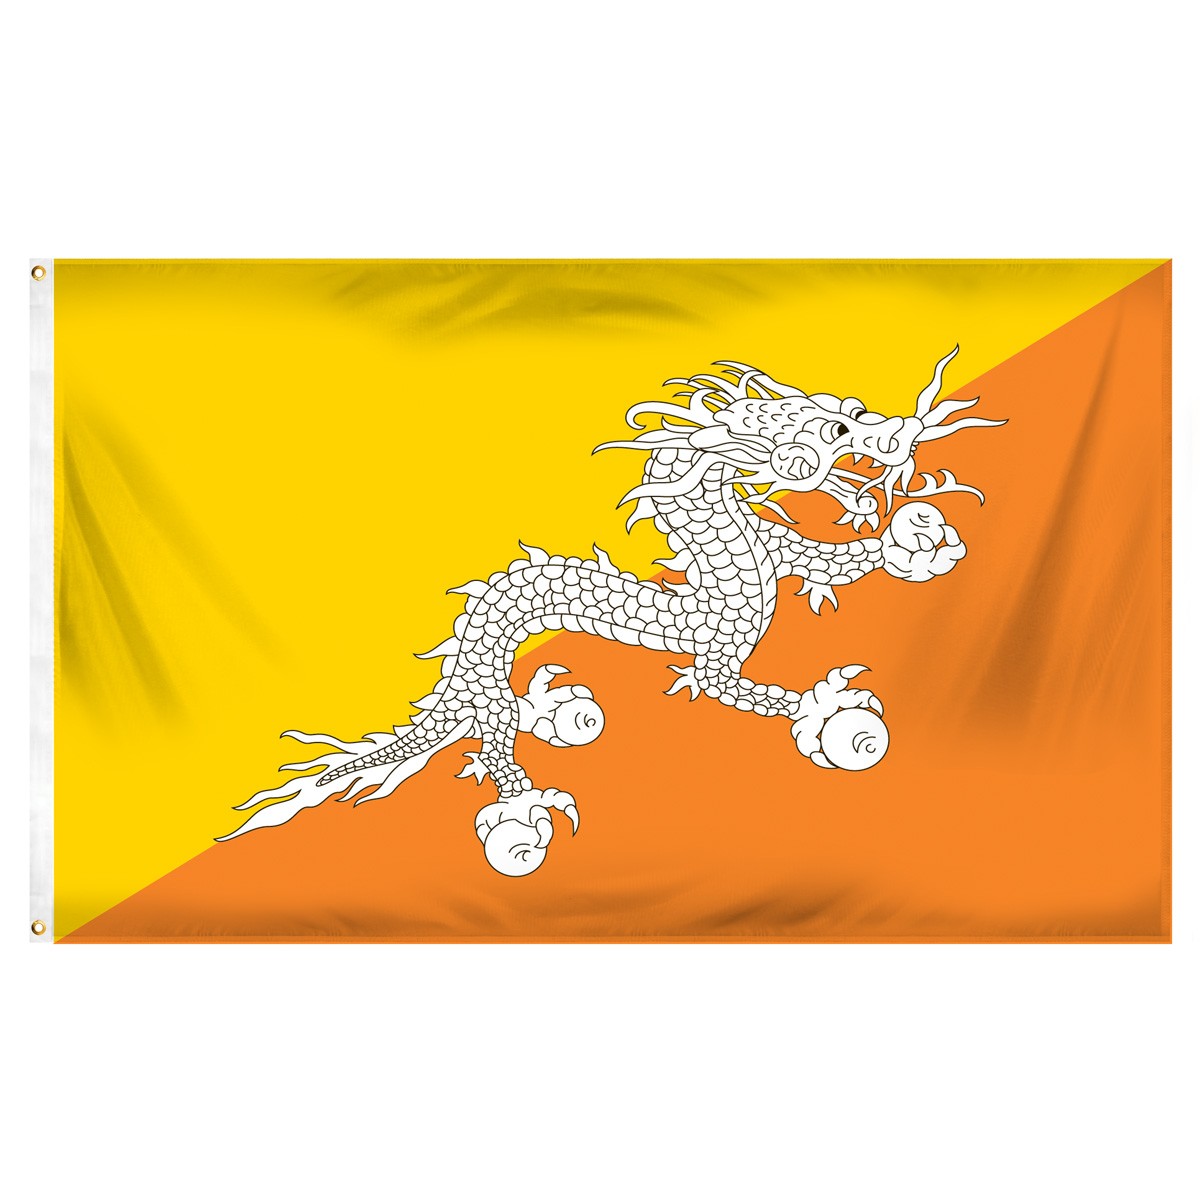 Bhutan Executive Flags